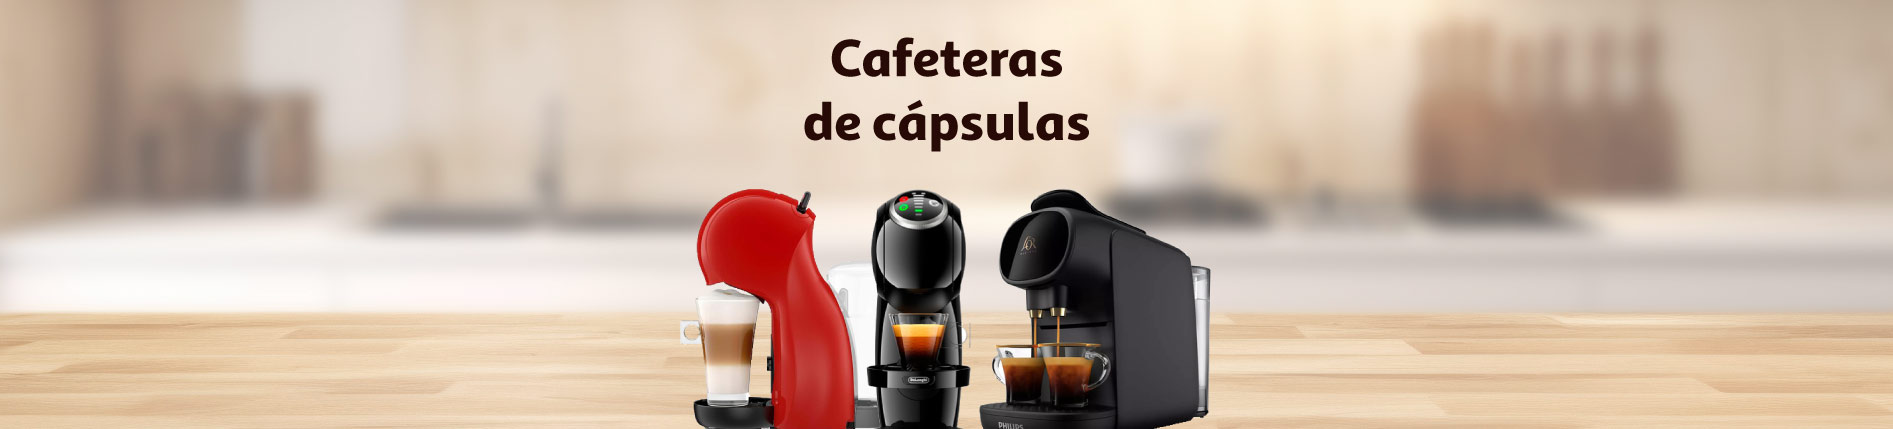 Cafeteras de cápsulas - Categorías - Alcampo supermercado online